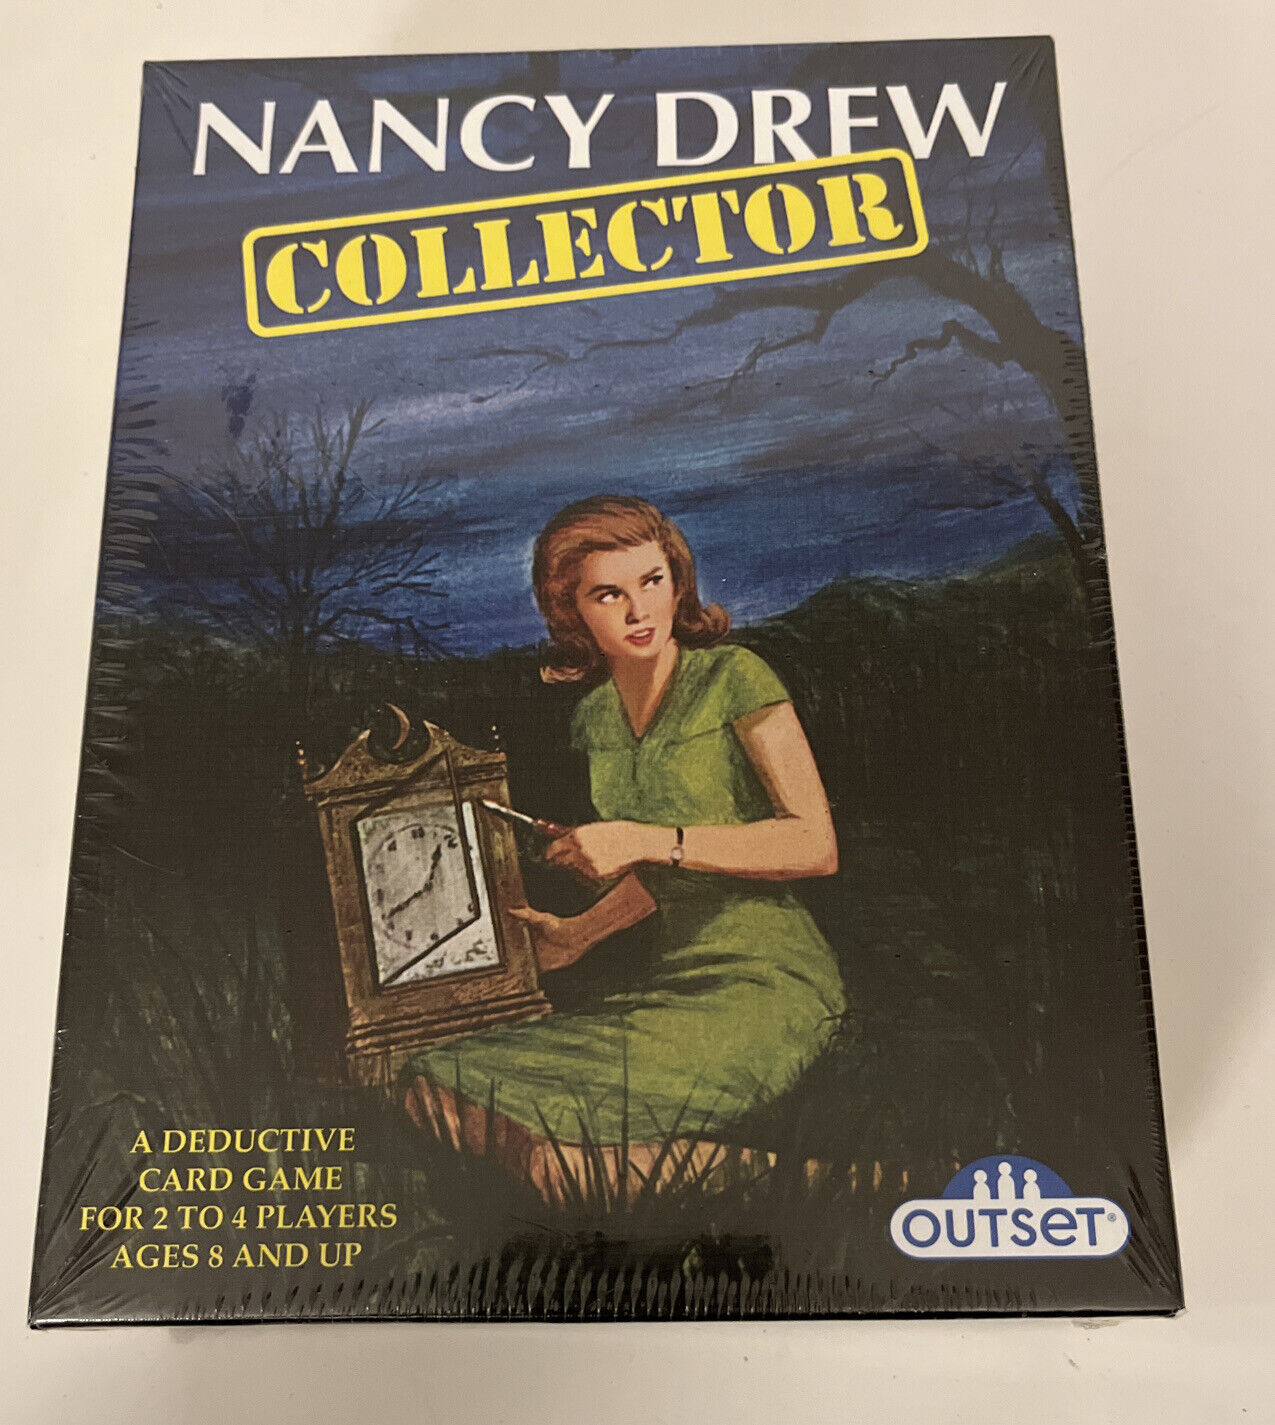 Nancy Drew Collector